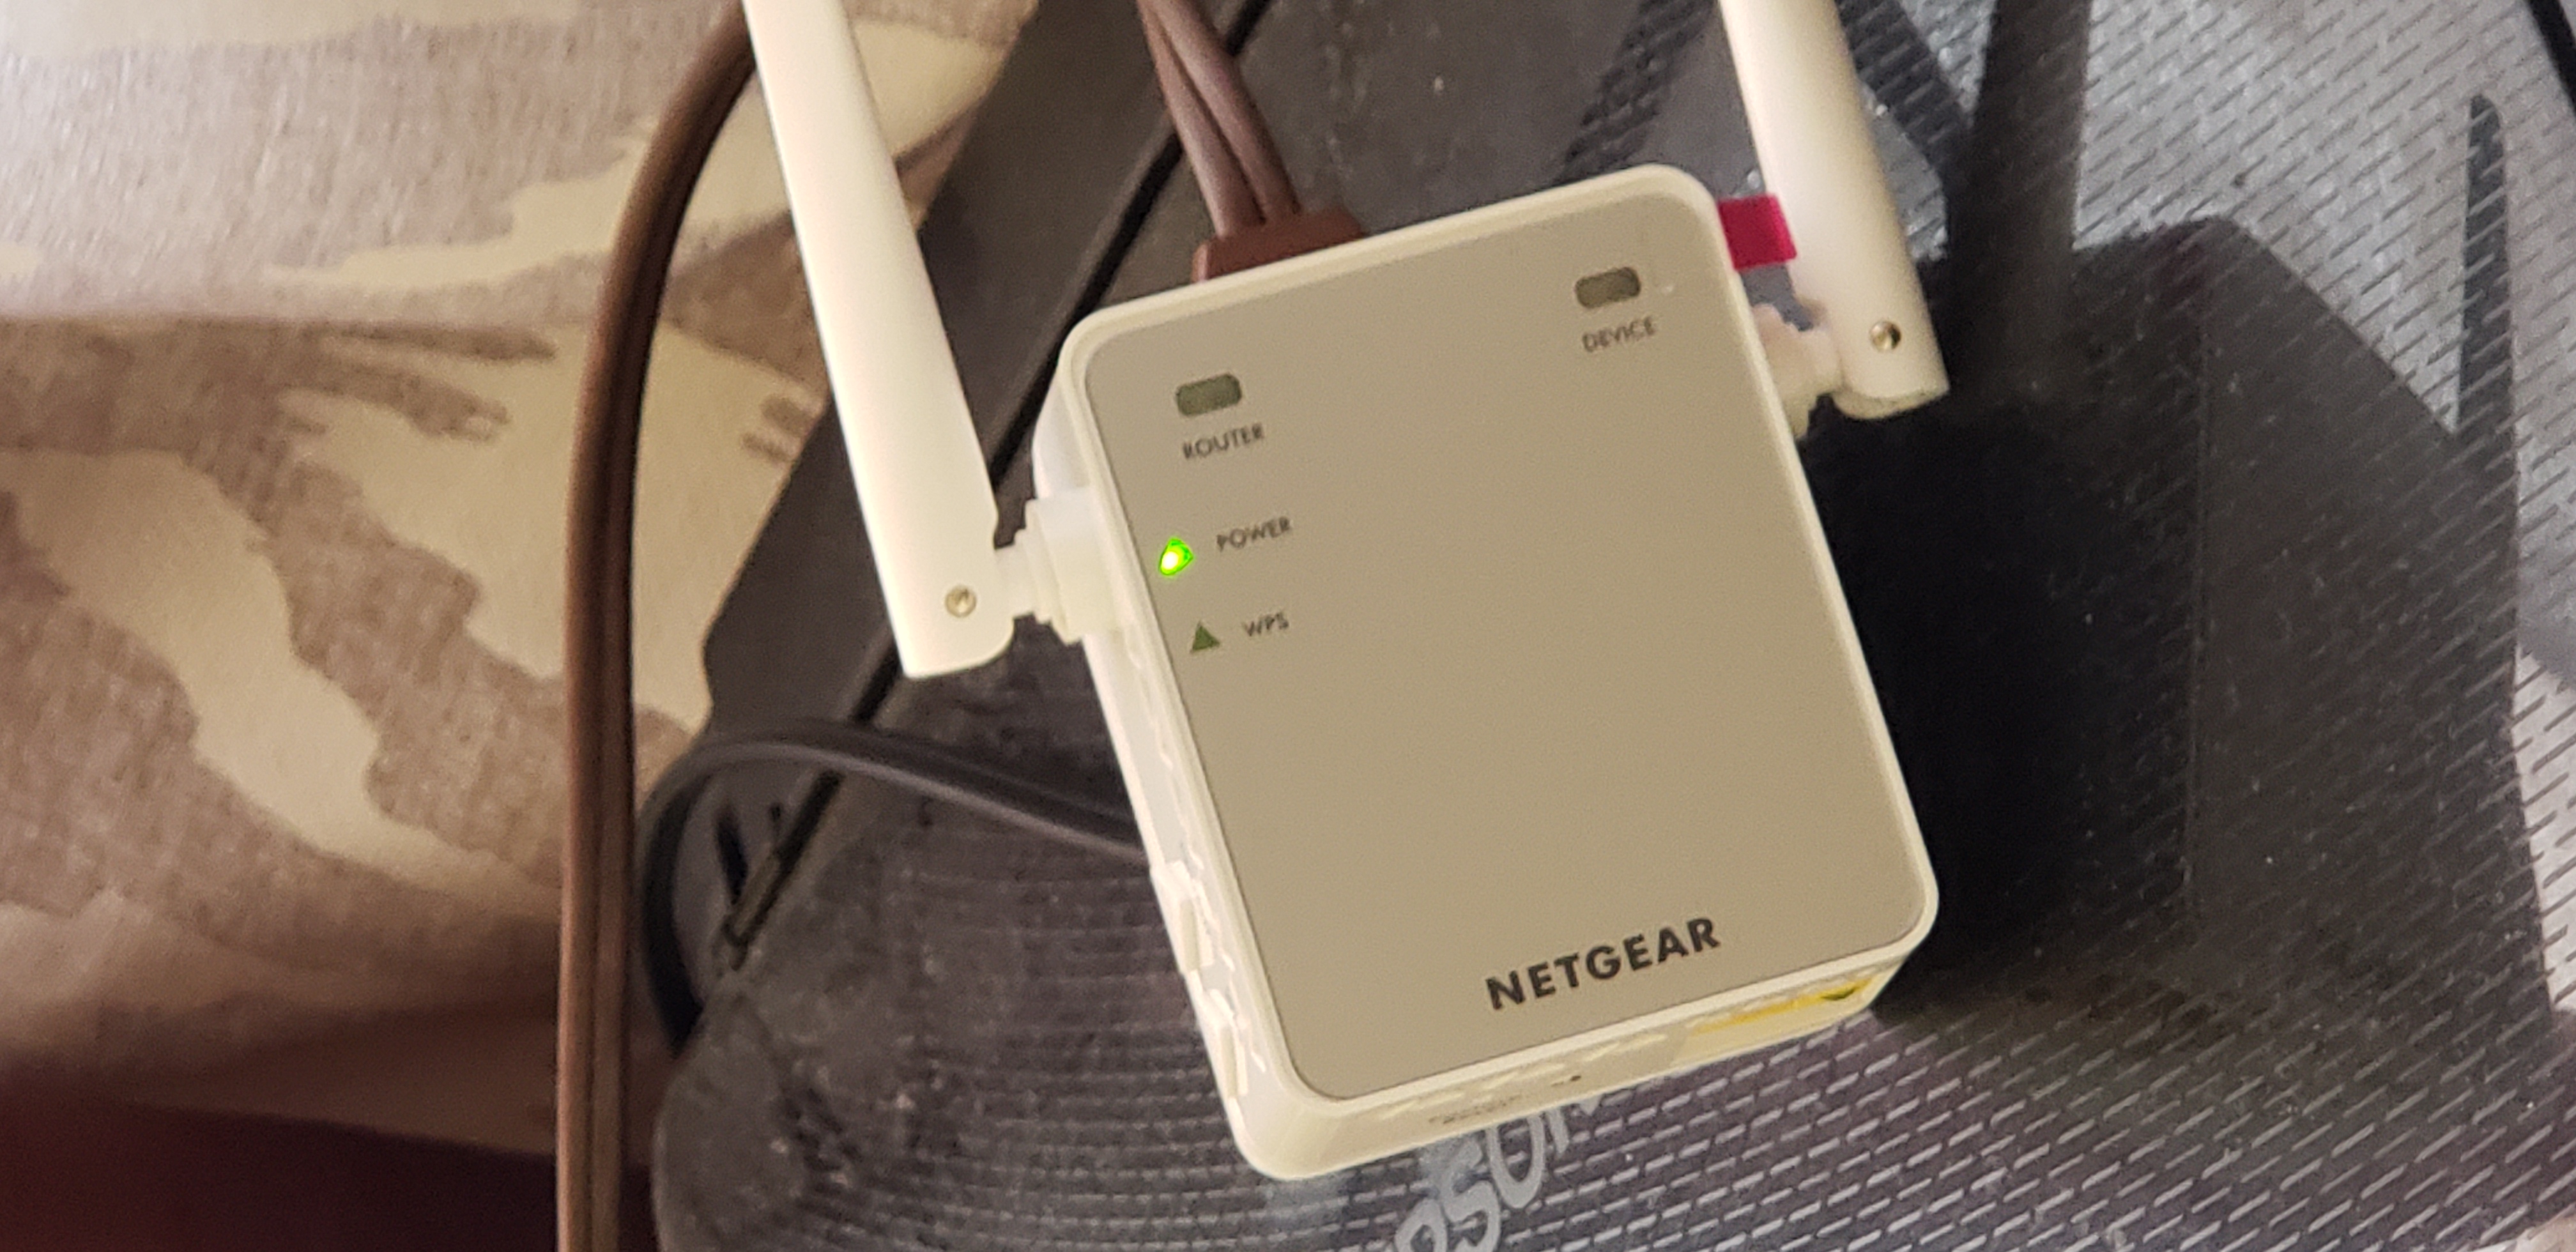 wifi extender ex2700 set up without wps - NETGEAR Communities